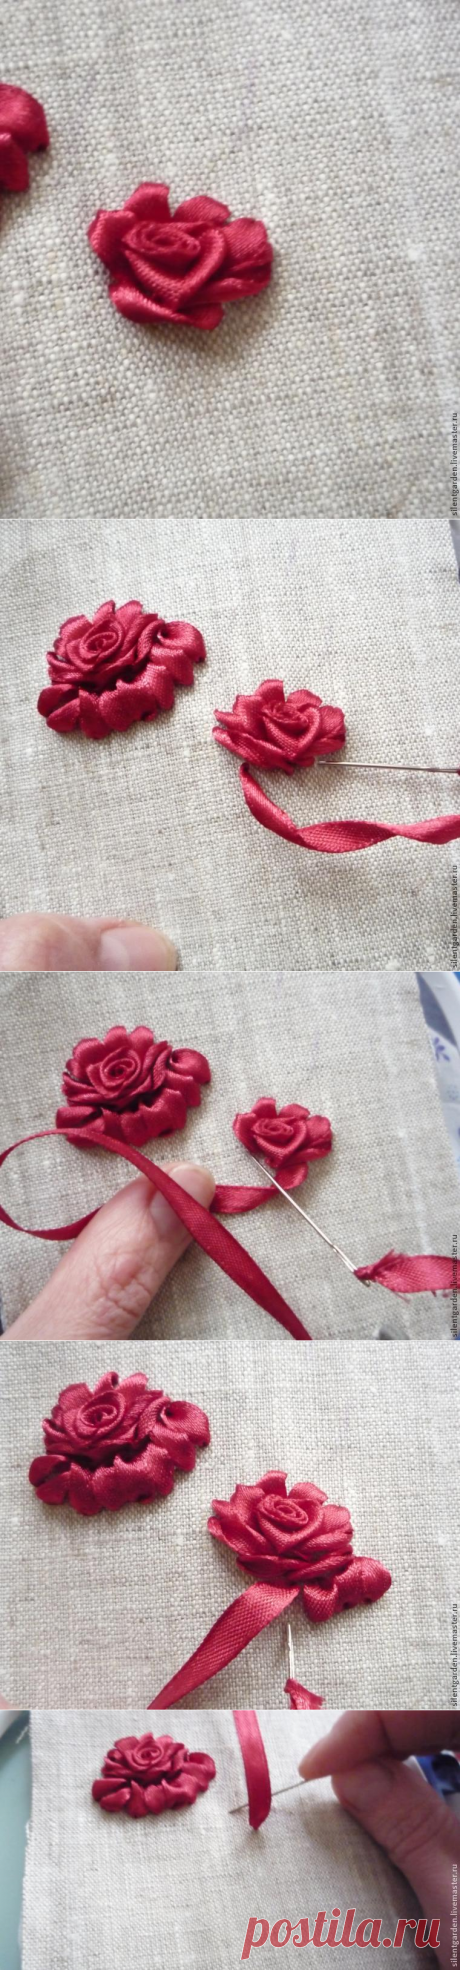 Учимся создавать красивый объемный цветок розы в технике вышивки лентами / Surfingbird знает всё, что ты любишь